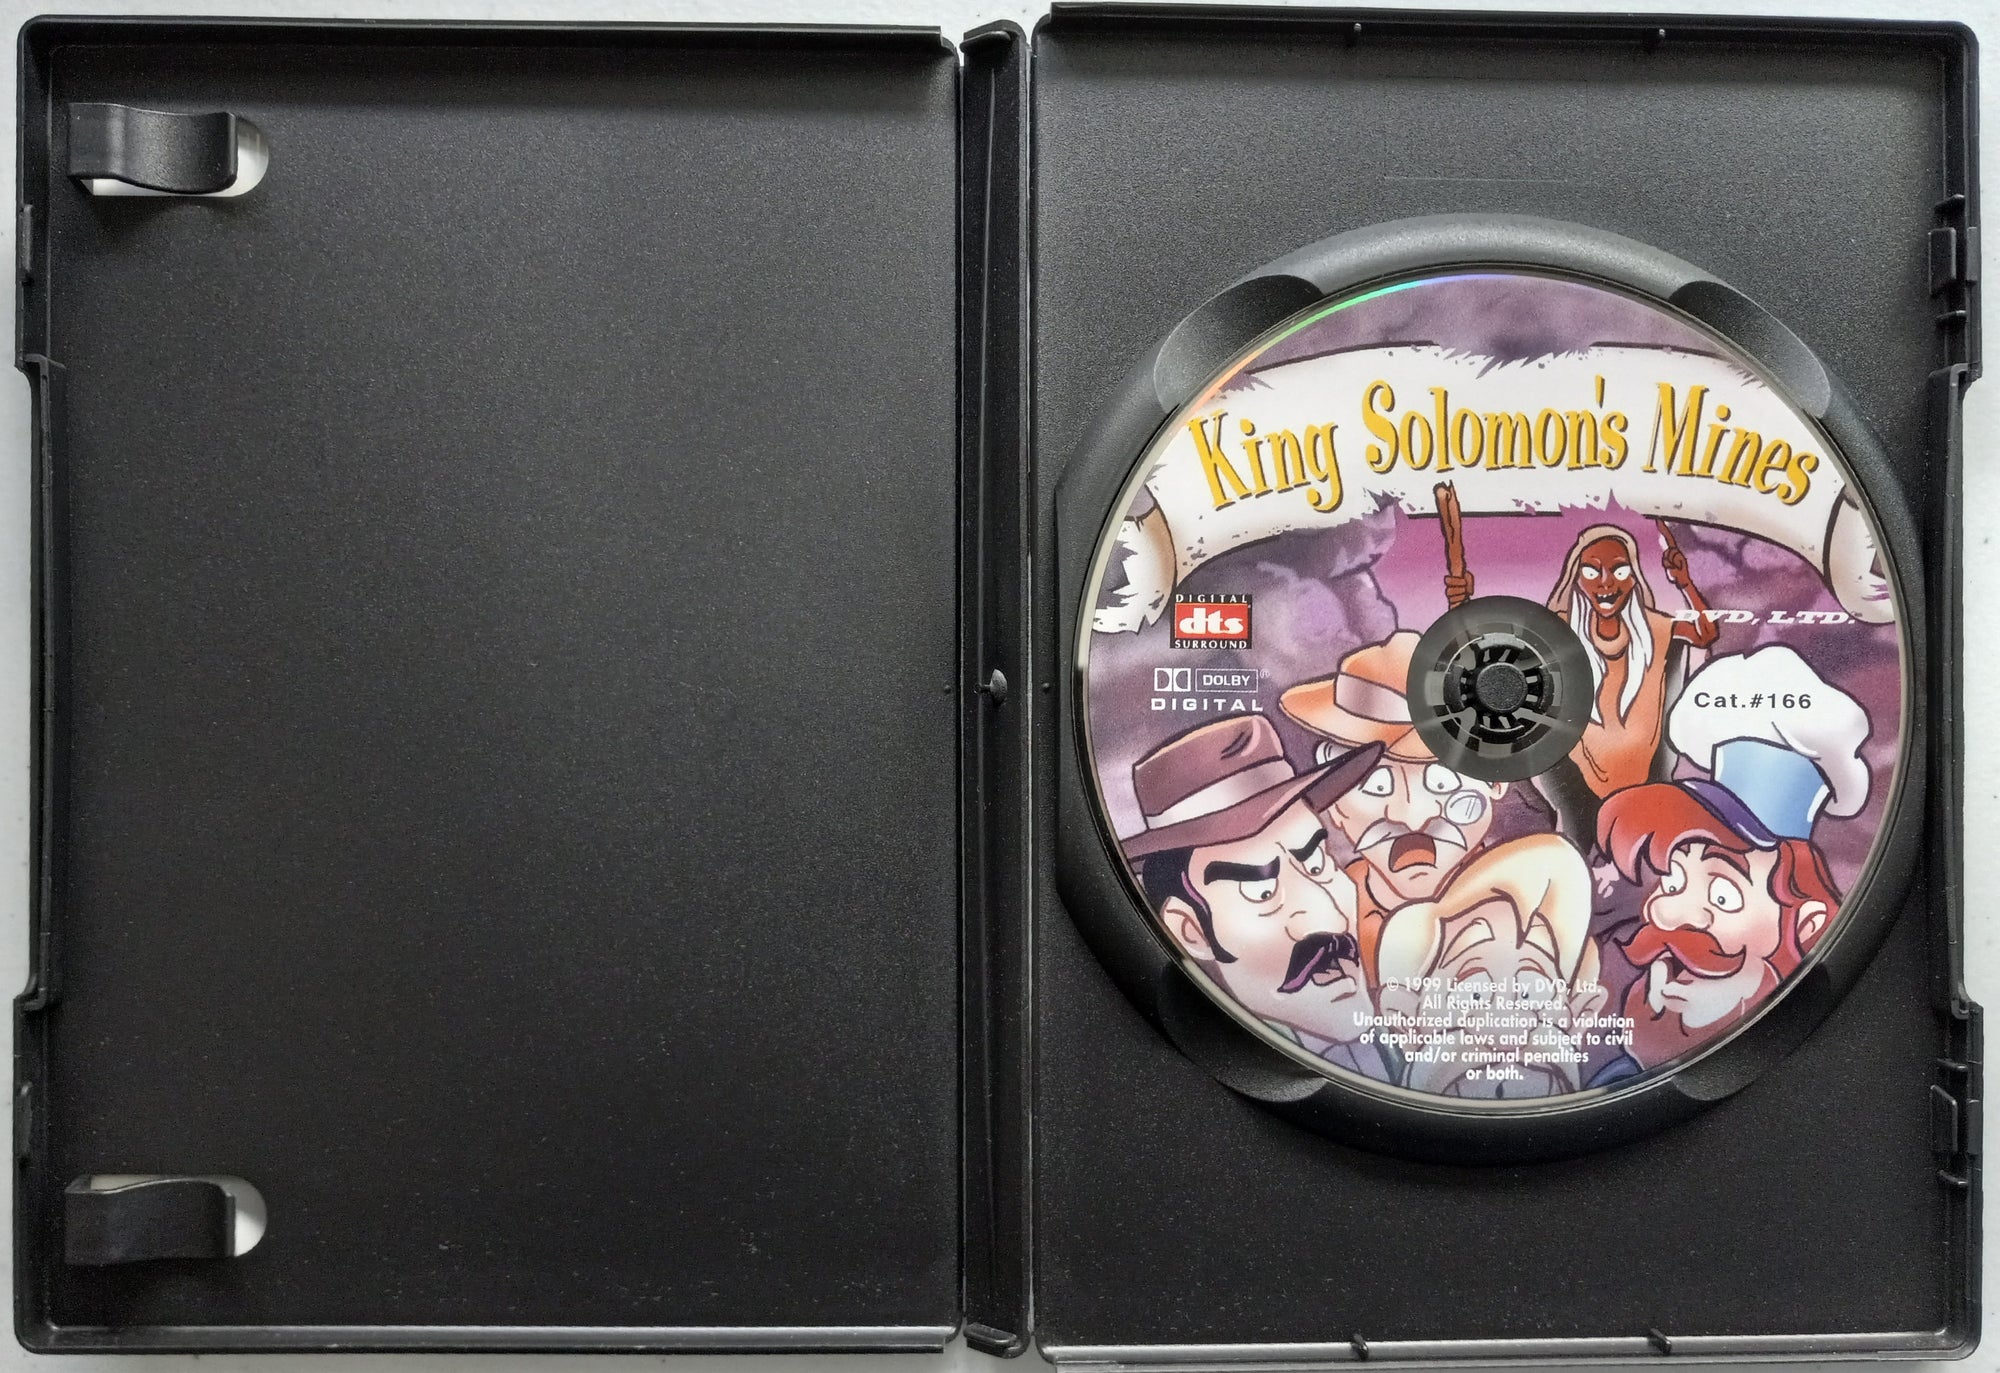 King-Solomon_s-Mine-Cartoon-DVD